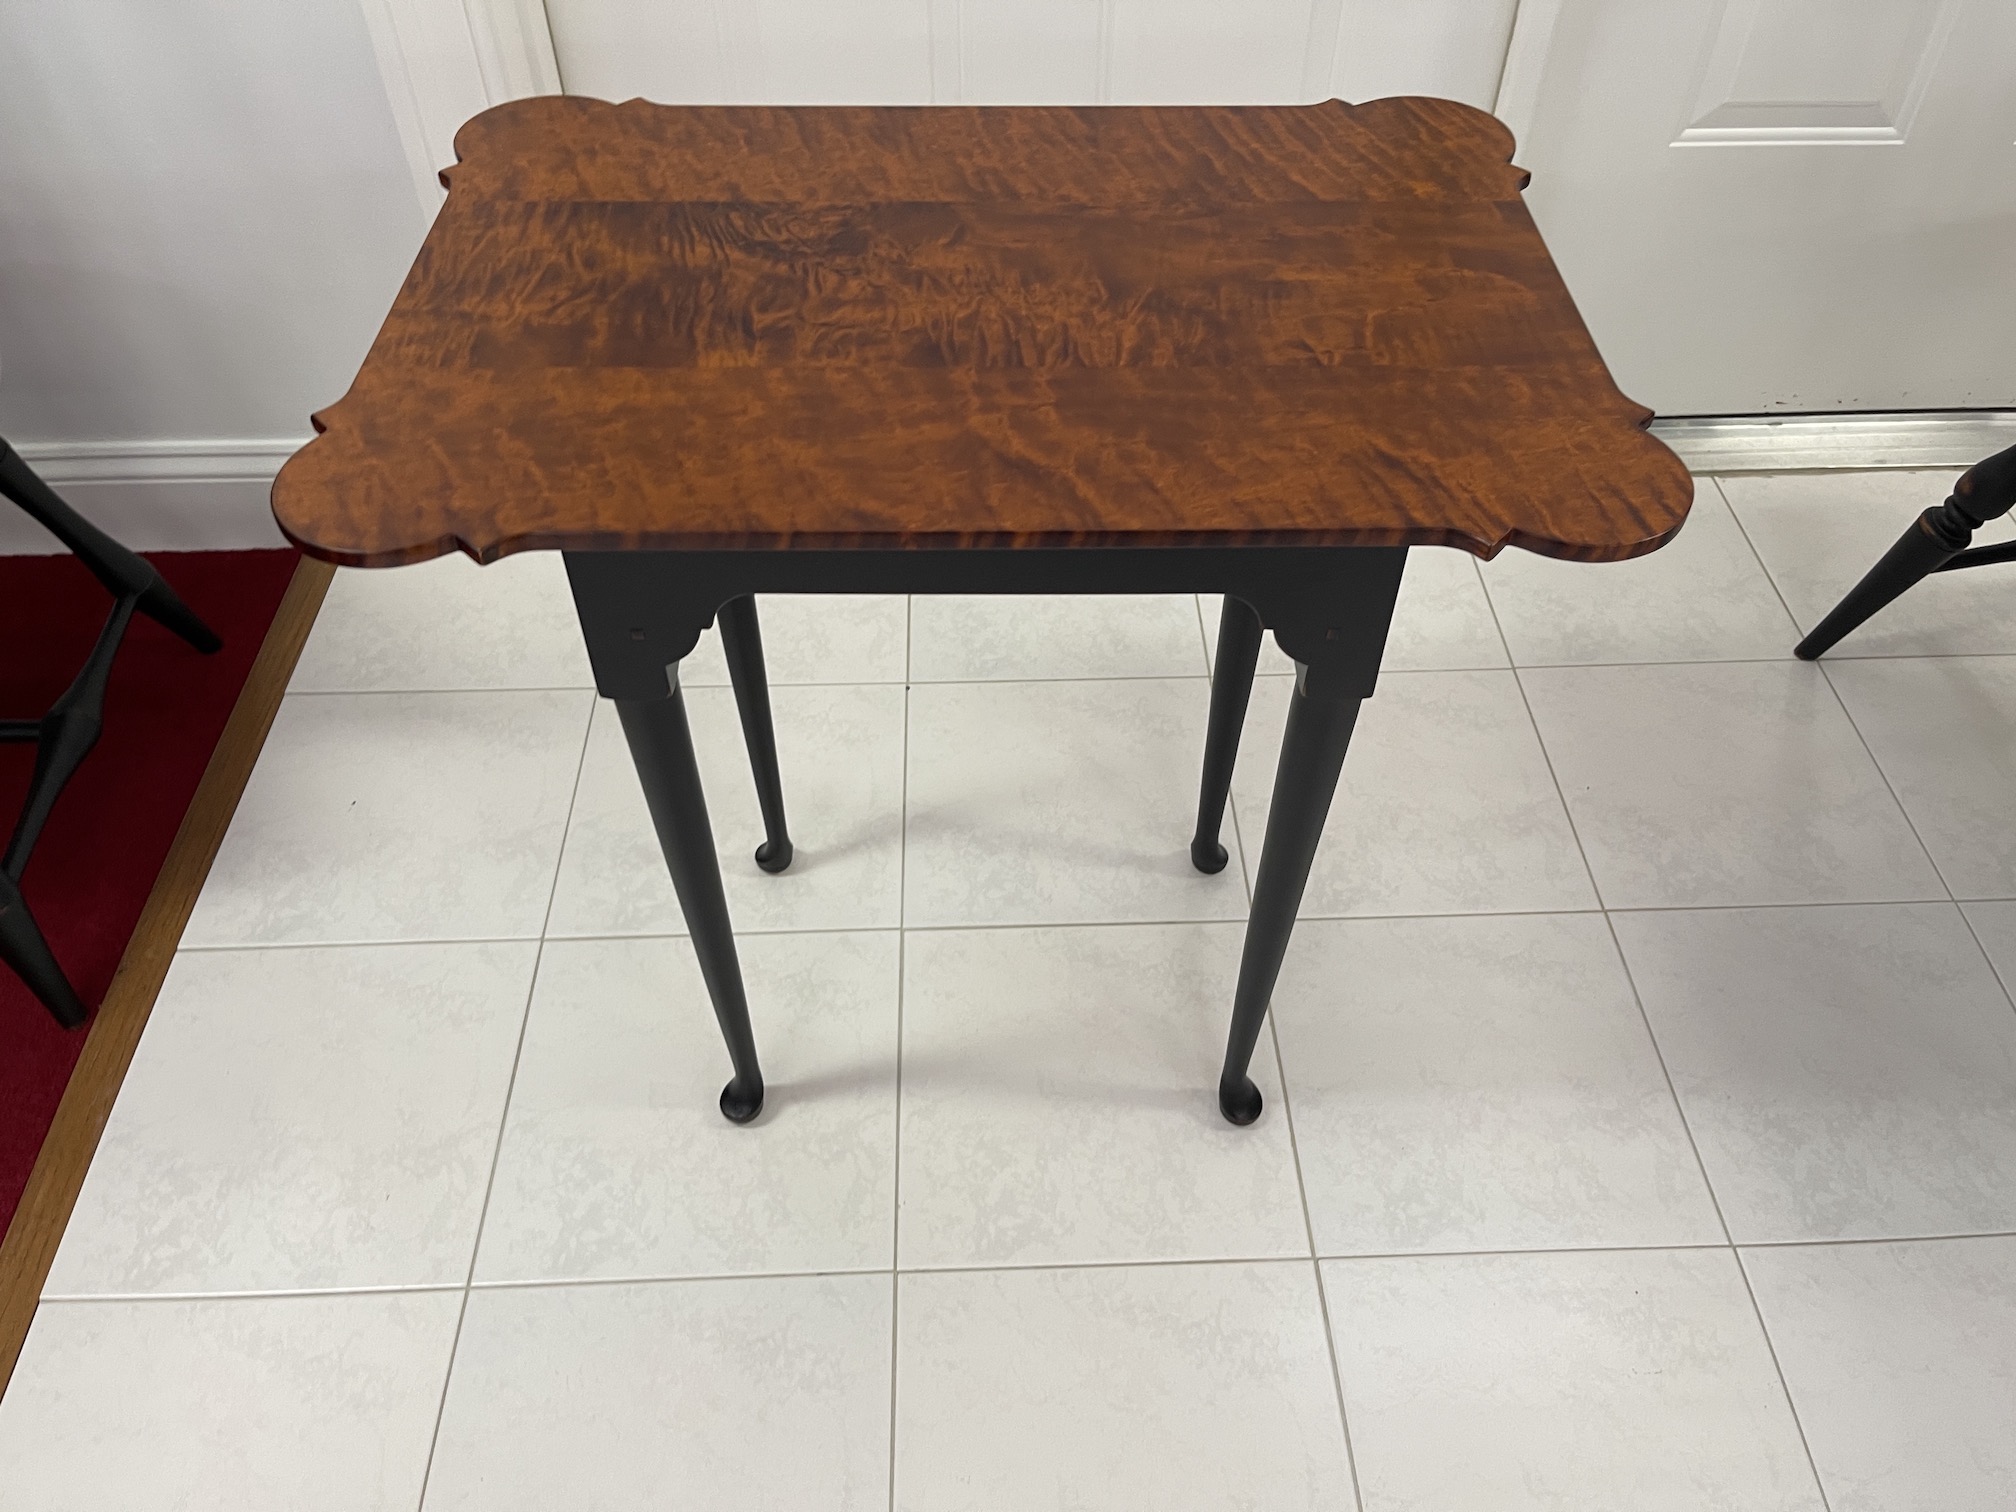 Porringer Tea Table Tiger Maple Top Antique Black over Red Base New Model Image